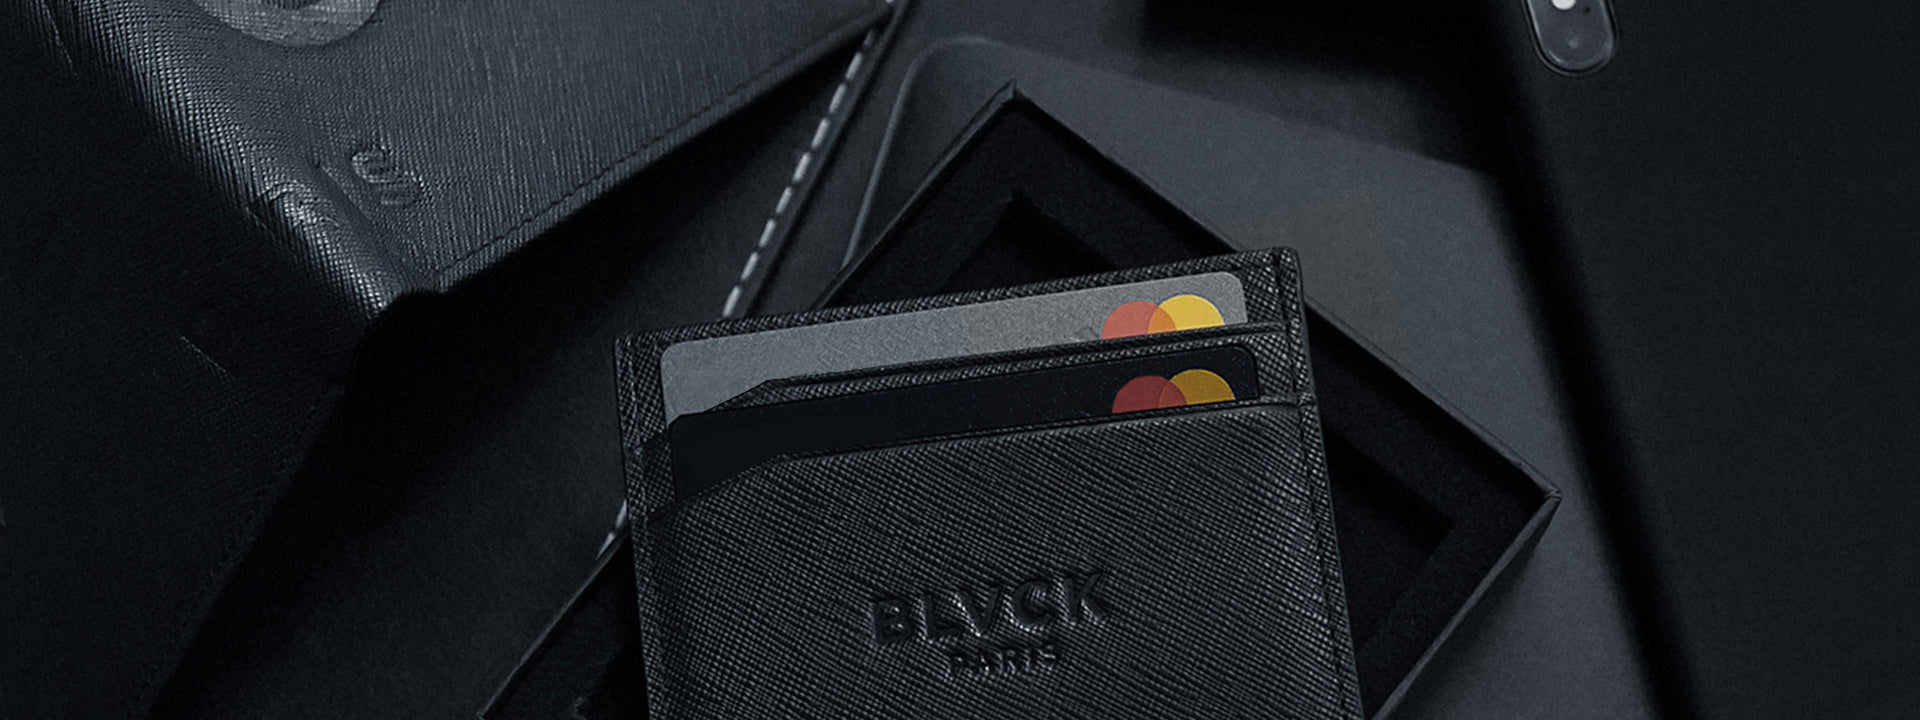 Blvck Paris  Leather Goods Men – Tagged wallet